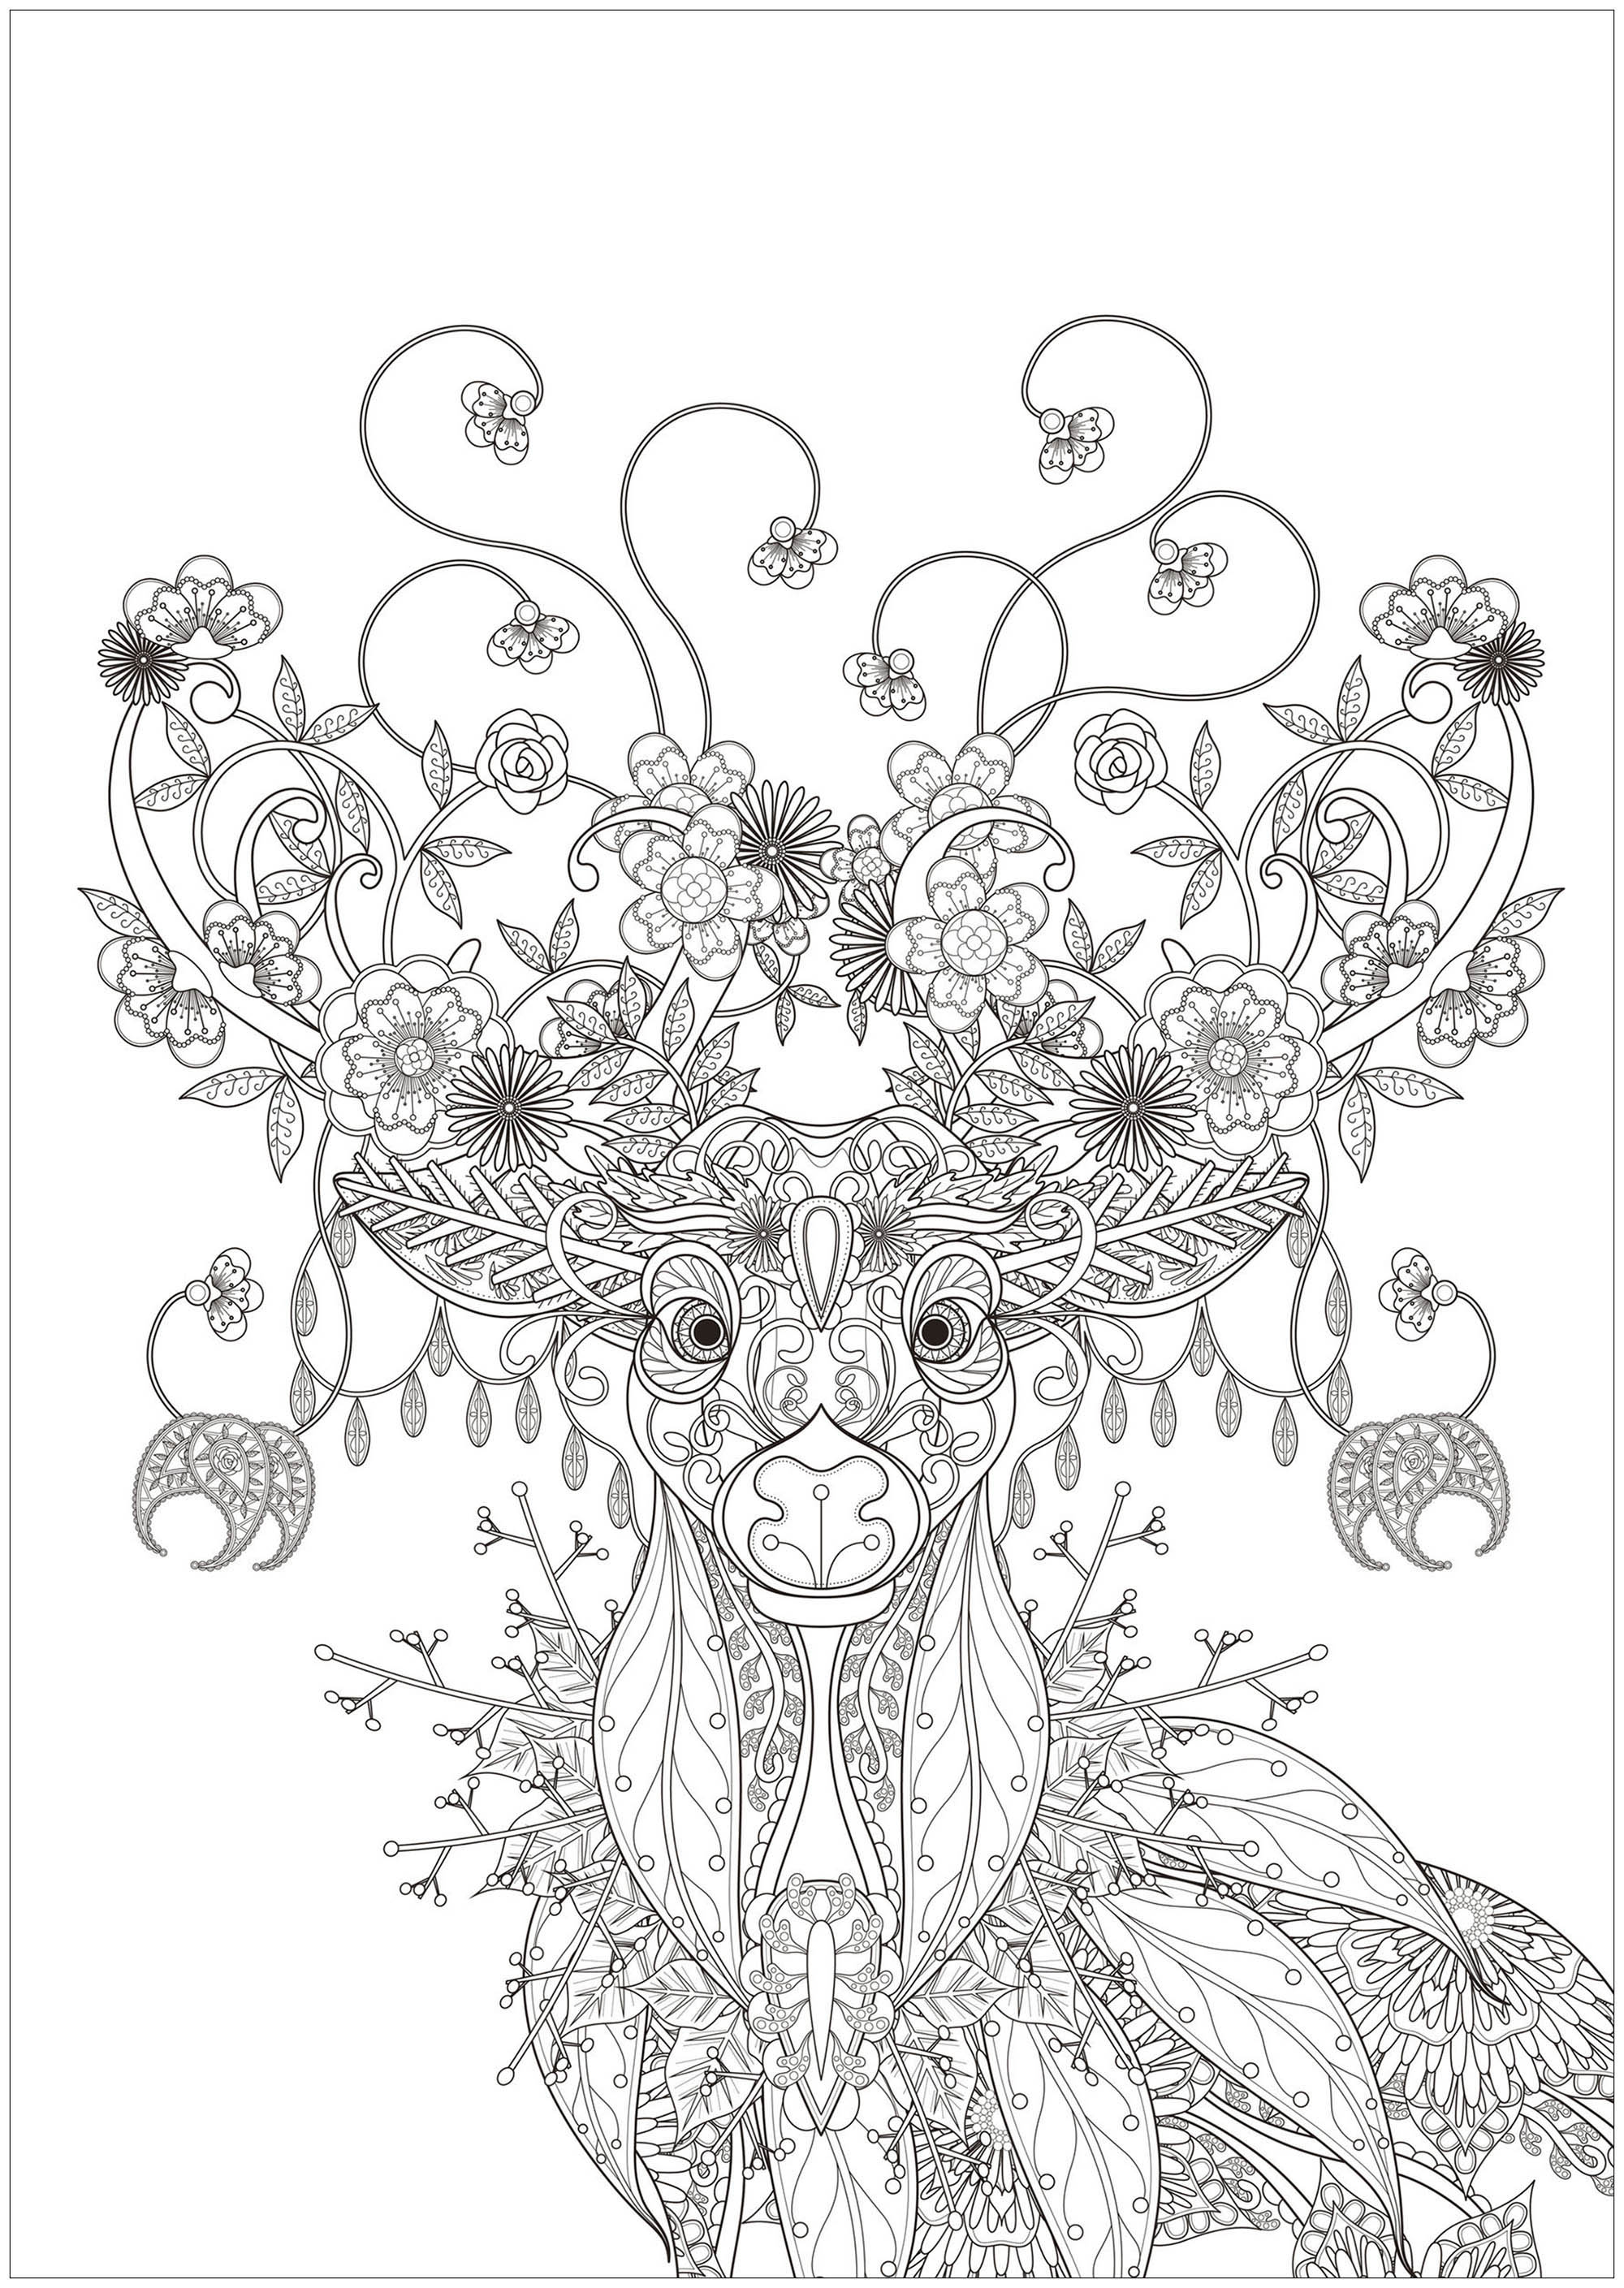 Magnífico Ciervo dibujado con elementos inspirados en la naturaleza : flores, hojas, ramas de árboles .., Origen : 123rf   Artista : Kchung